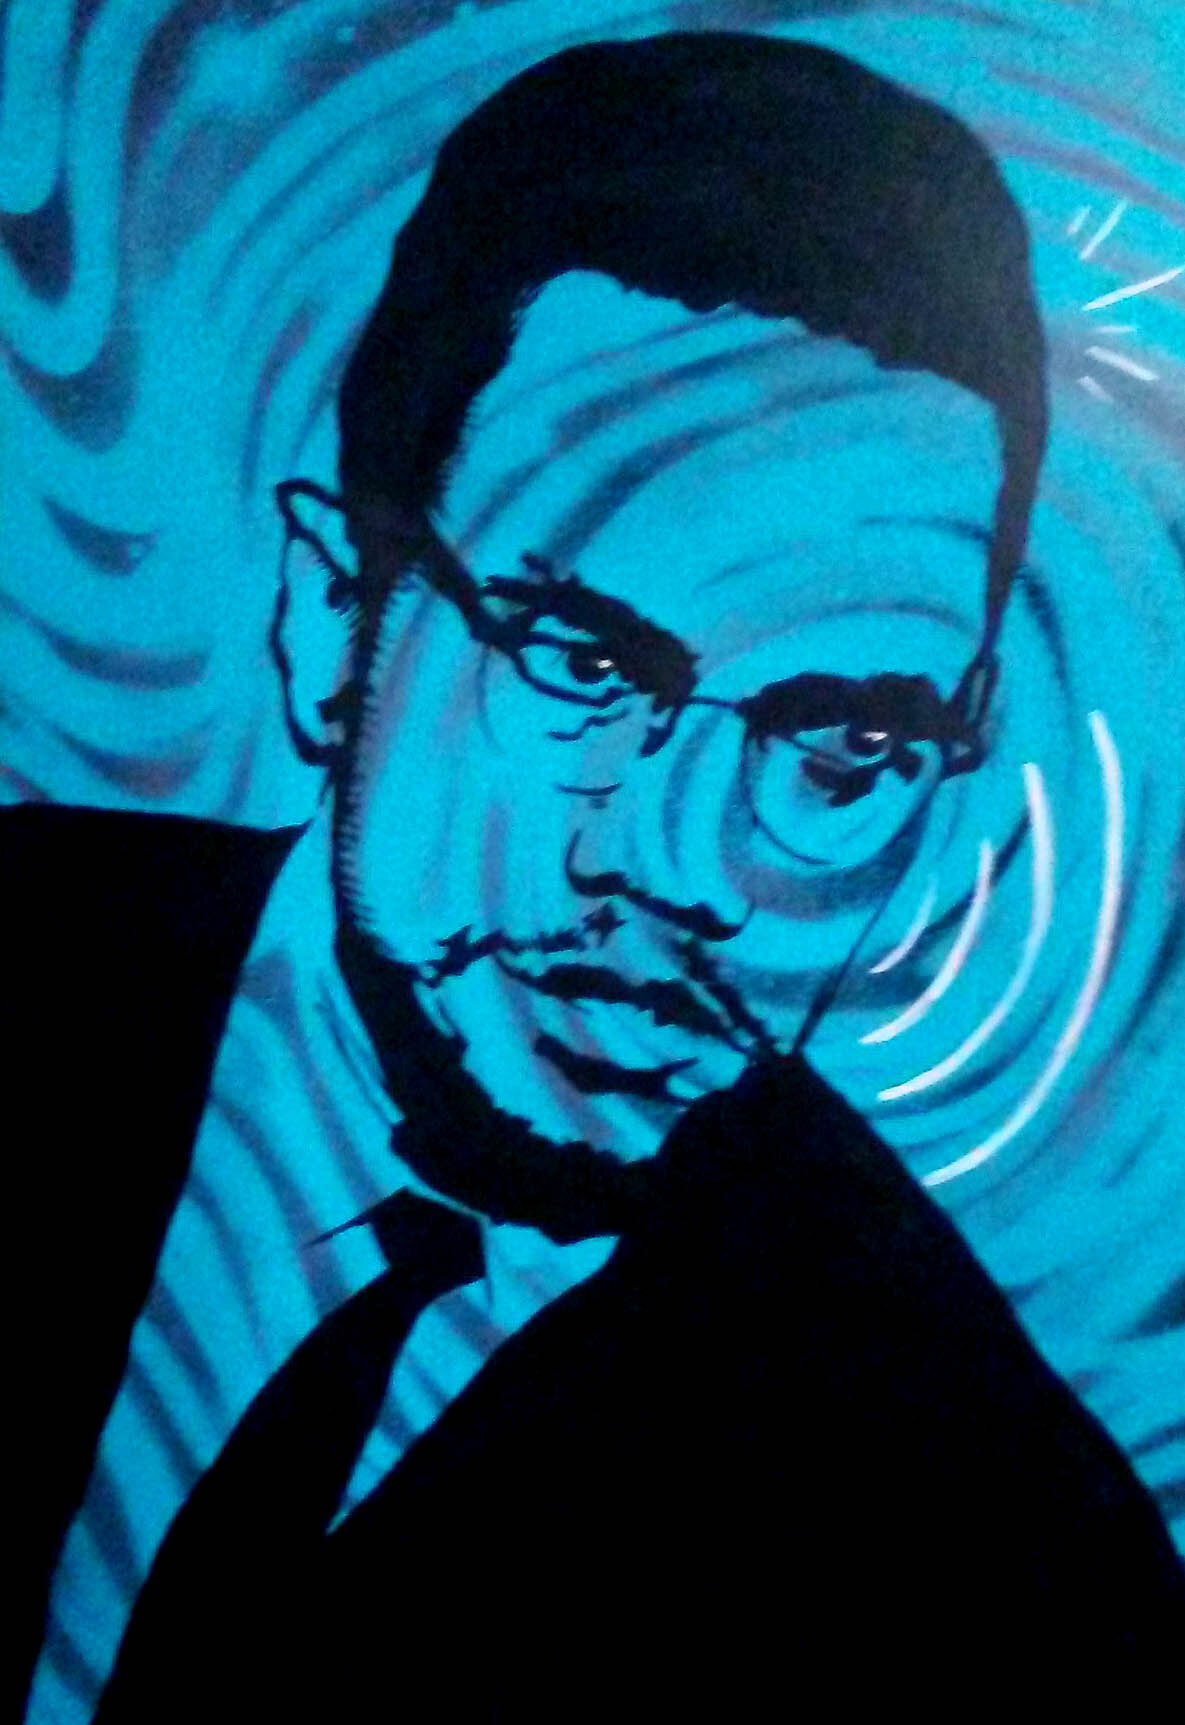  Malcolm X artwork for Westside Park’s Black History Month. 